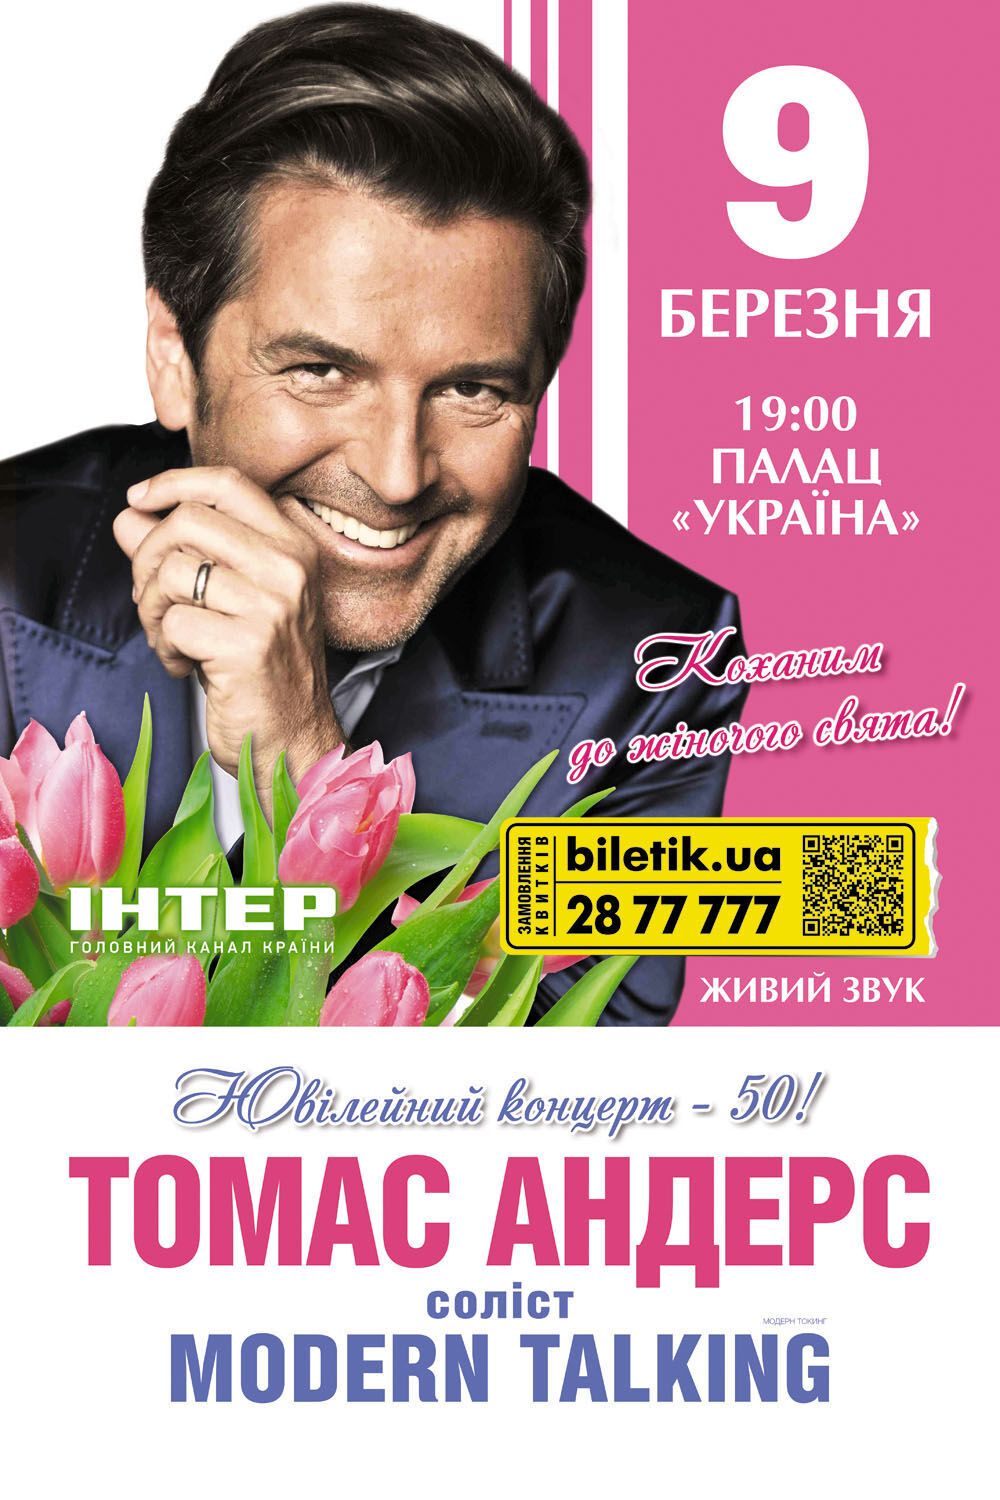 9 марта концерт Томаса Андерса в Киеве